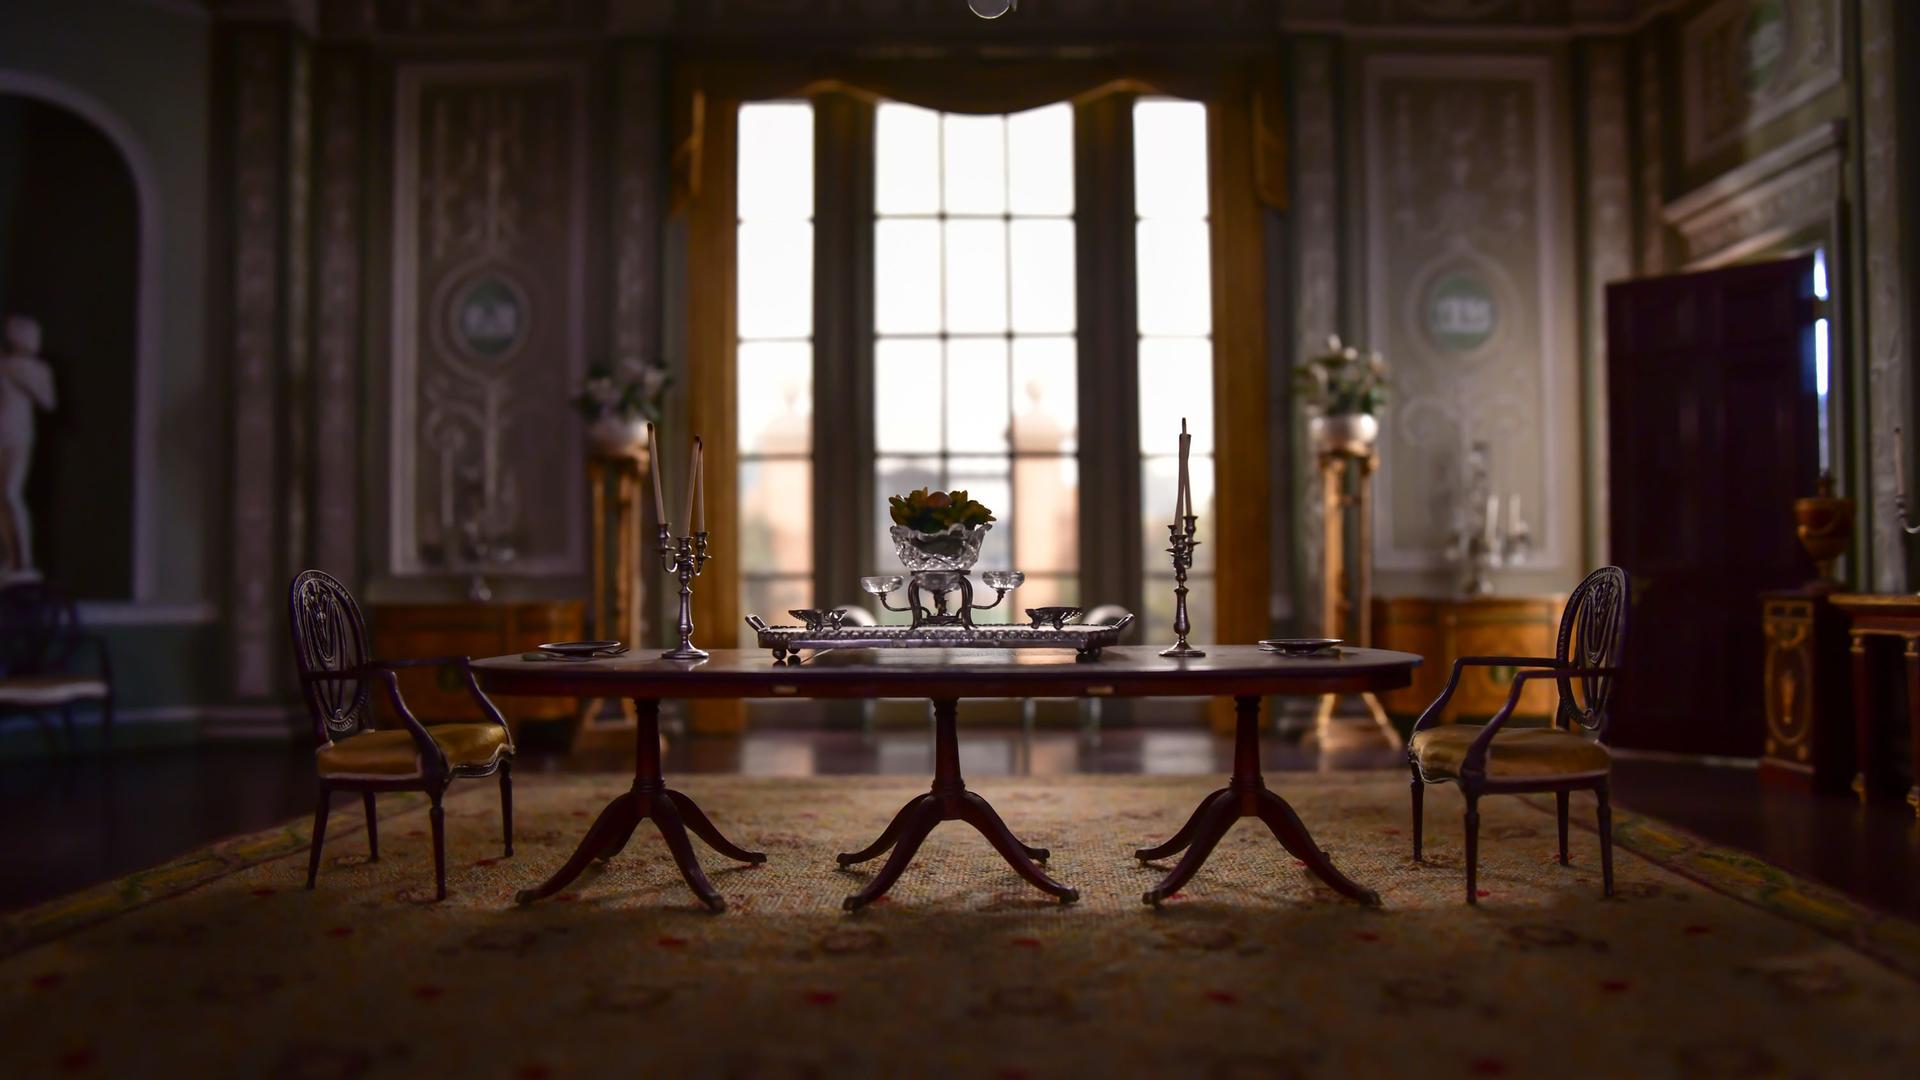 Ein Tisch mit zwei leeren Stühlen in einer edlen alten Villa.